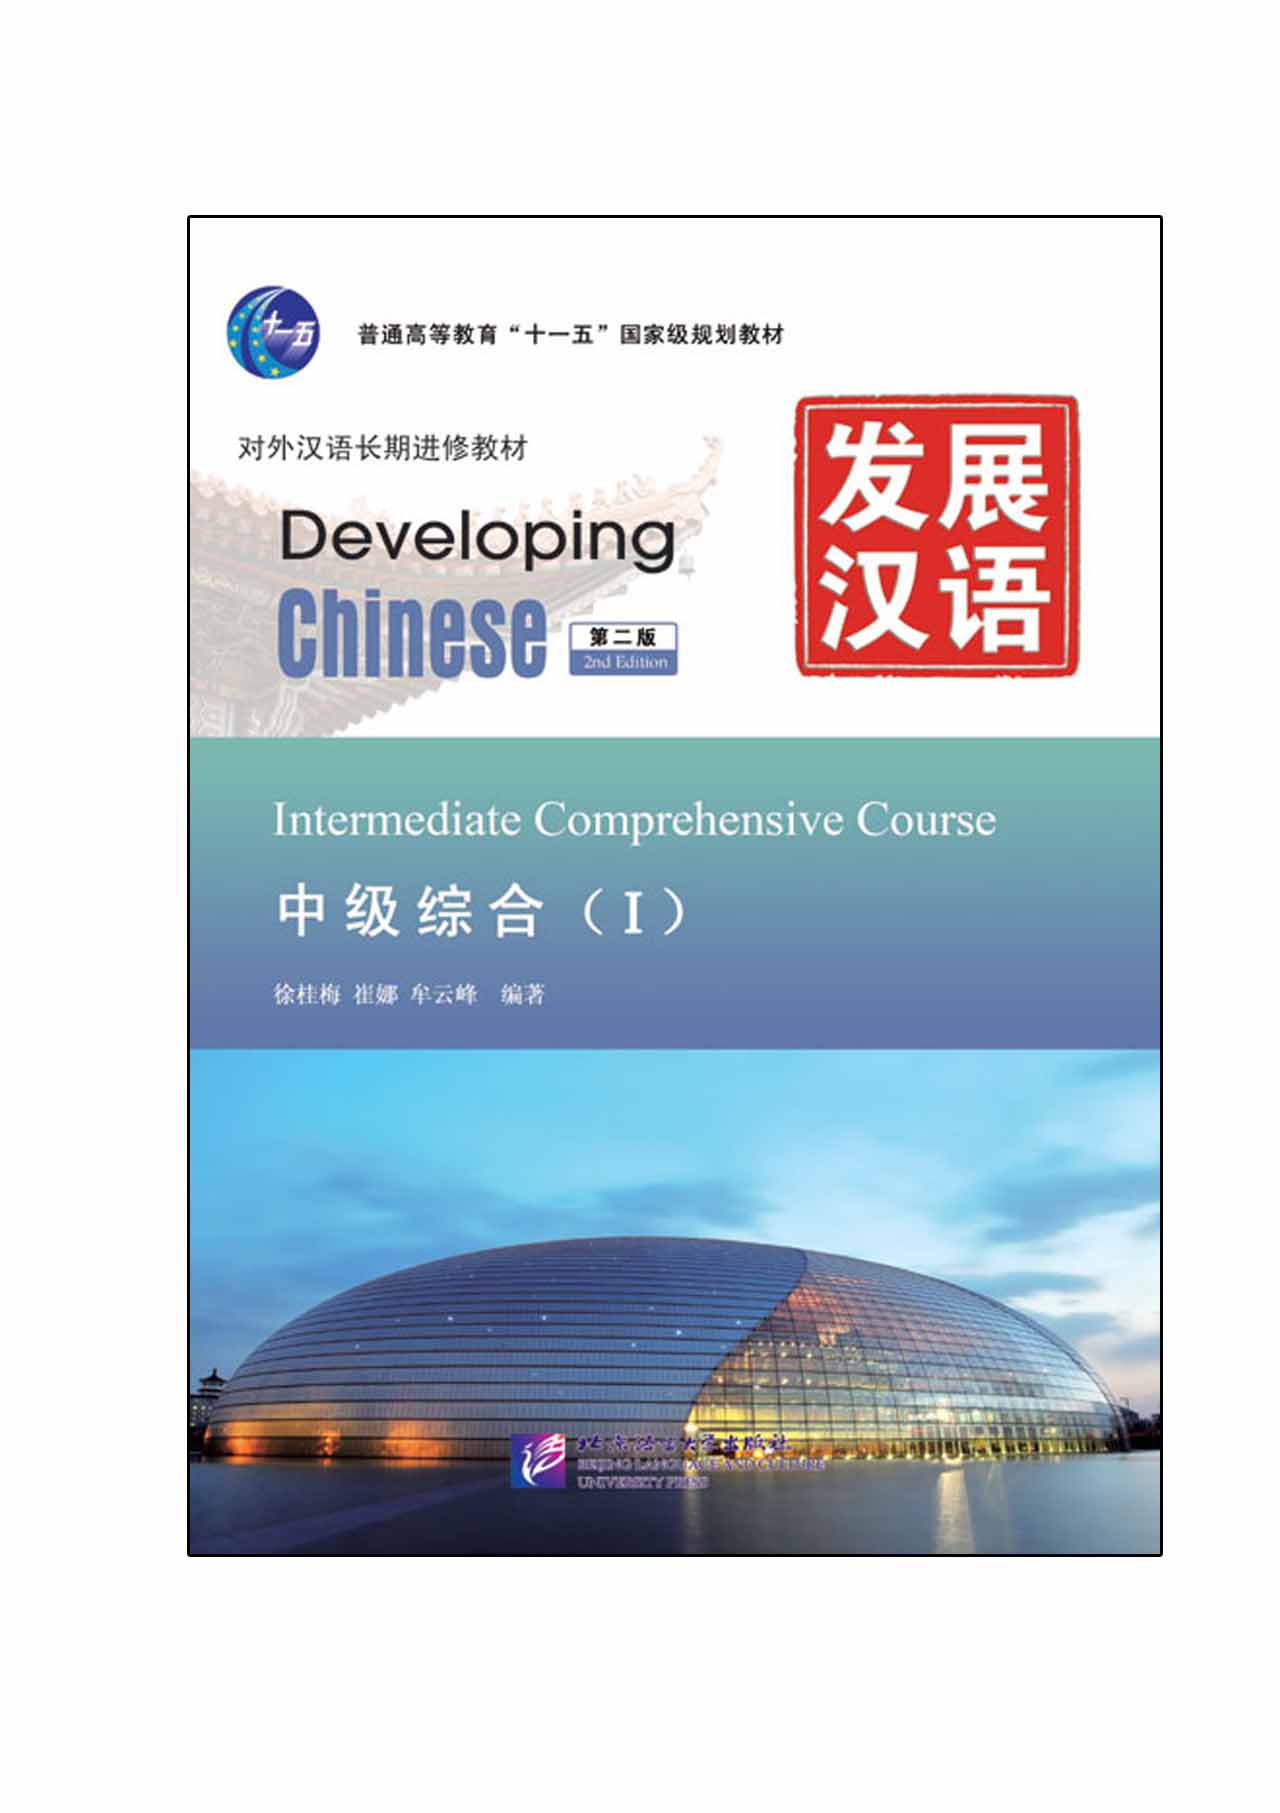 หนังสือเรียนภาษาจีน Developing Chinese (2nd Edition) Intermediate Comprehensive Course Ⅰ+MP3 发展汉语（第2版）中级综合（Ⅰ）（含1MP3）